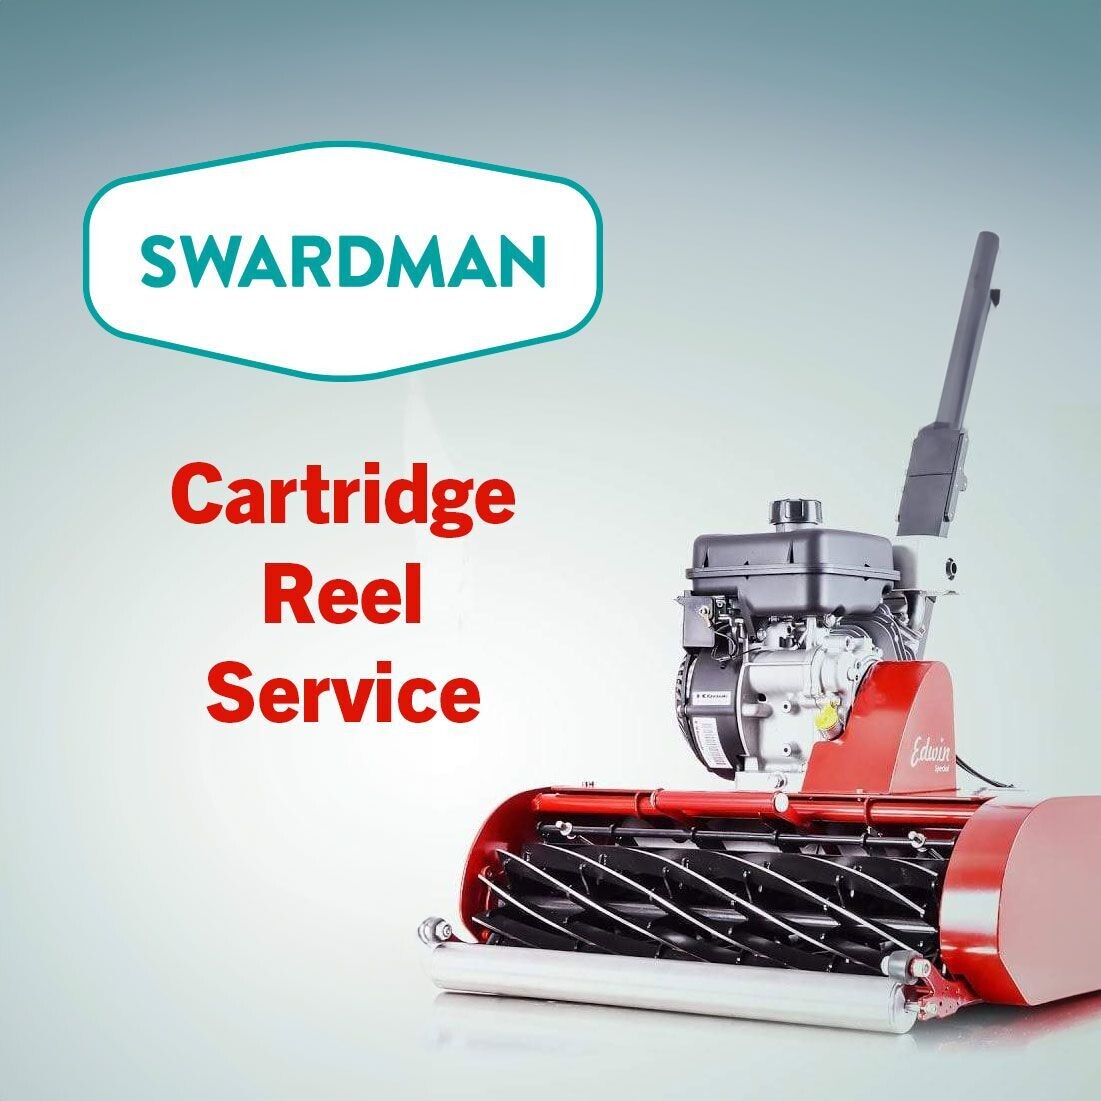 Swardman Reel Cartridge Service